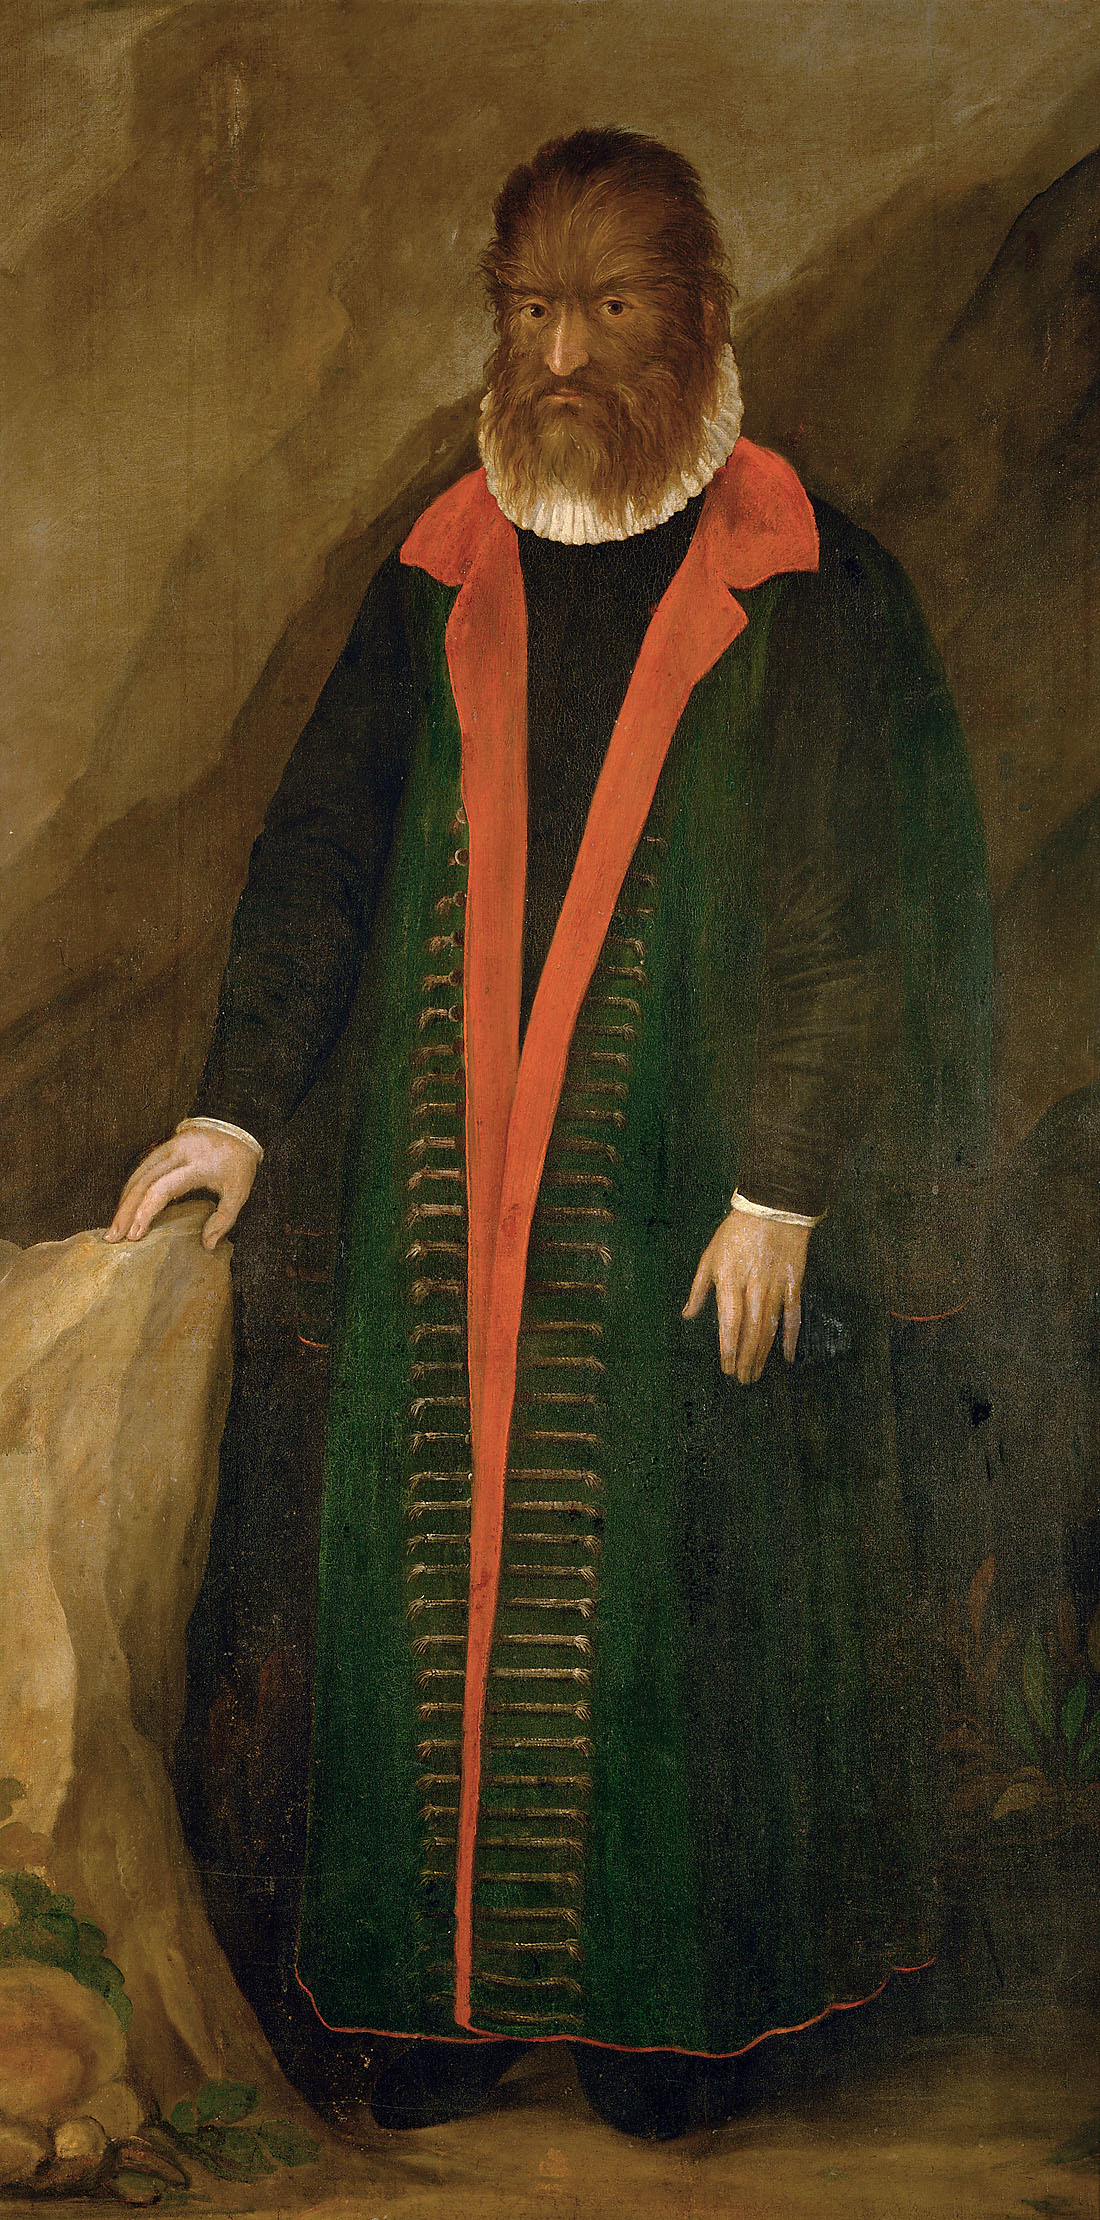 "Волосатый человек", Петрус Гонсалвус by Неизвестный Художни - 1580 